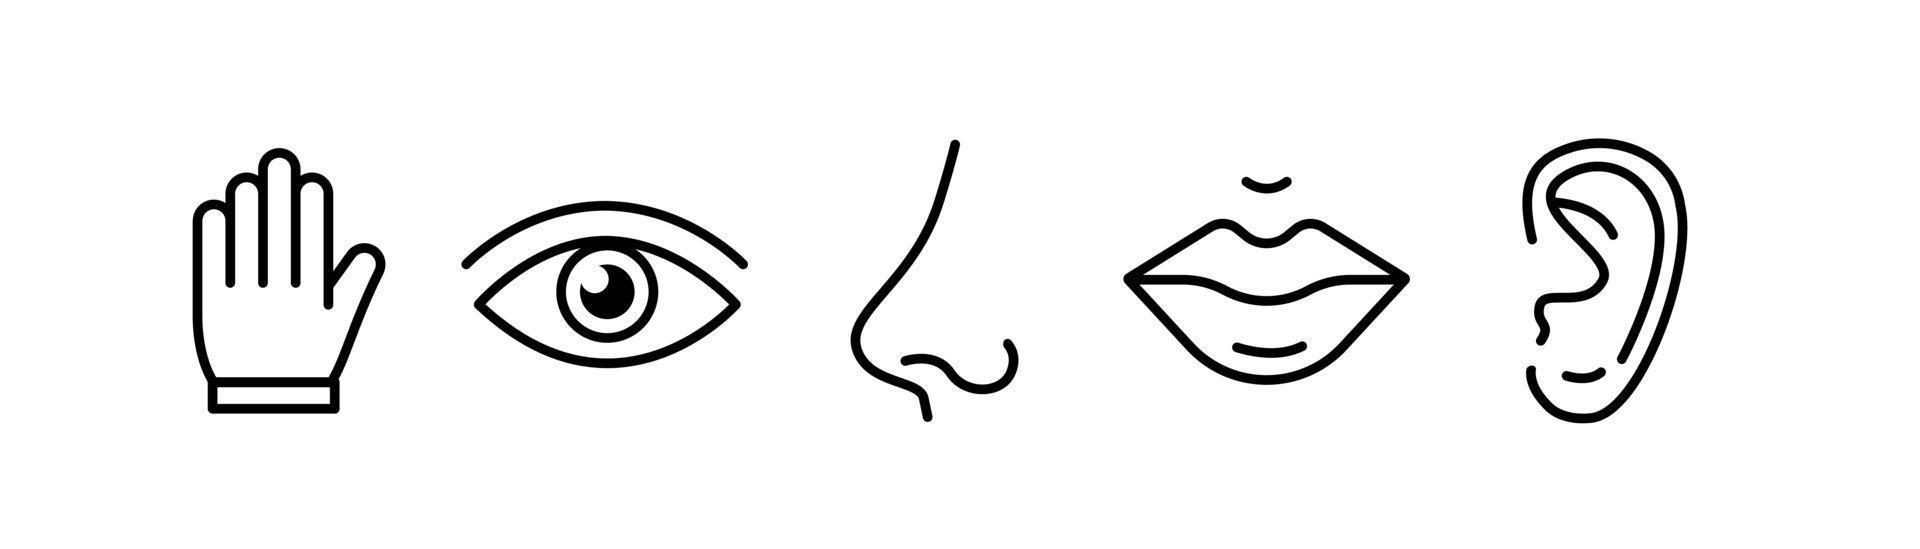 menselijke zintuigen vijf soorten. zicht door oog, ruiken met neus, proeven met tong. symbolen getekende pictogram. geïsoleerde platte vectorillustratie op witte achtergrond vector